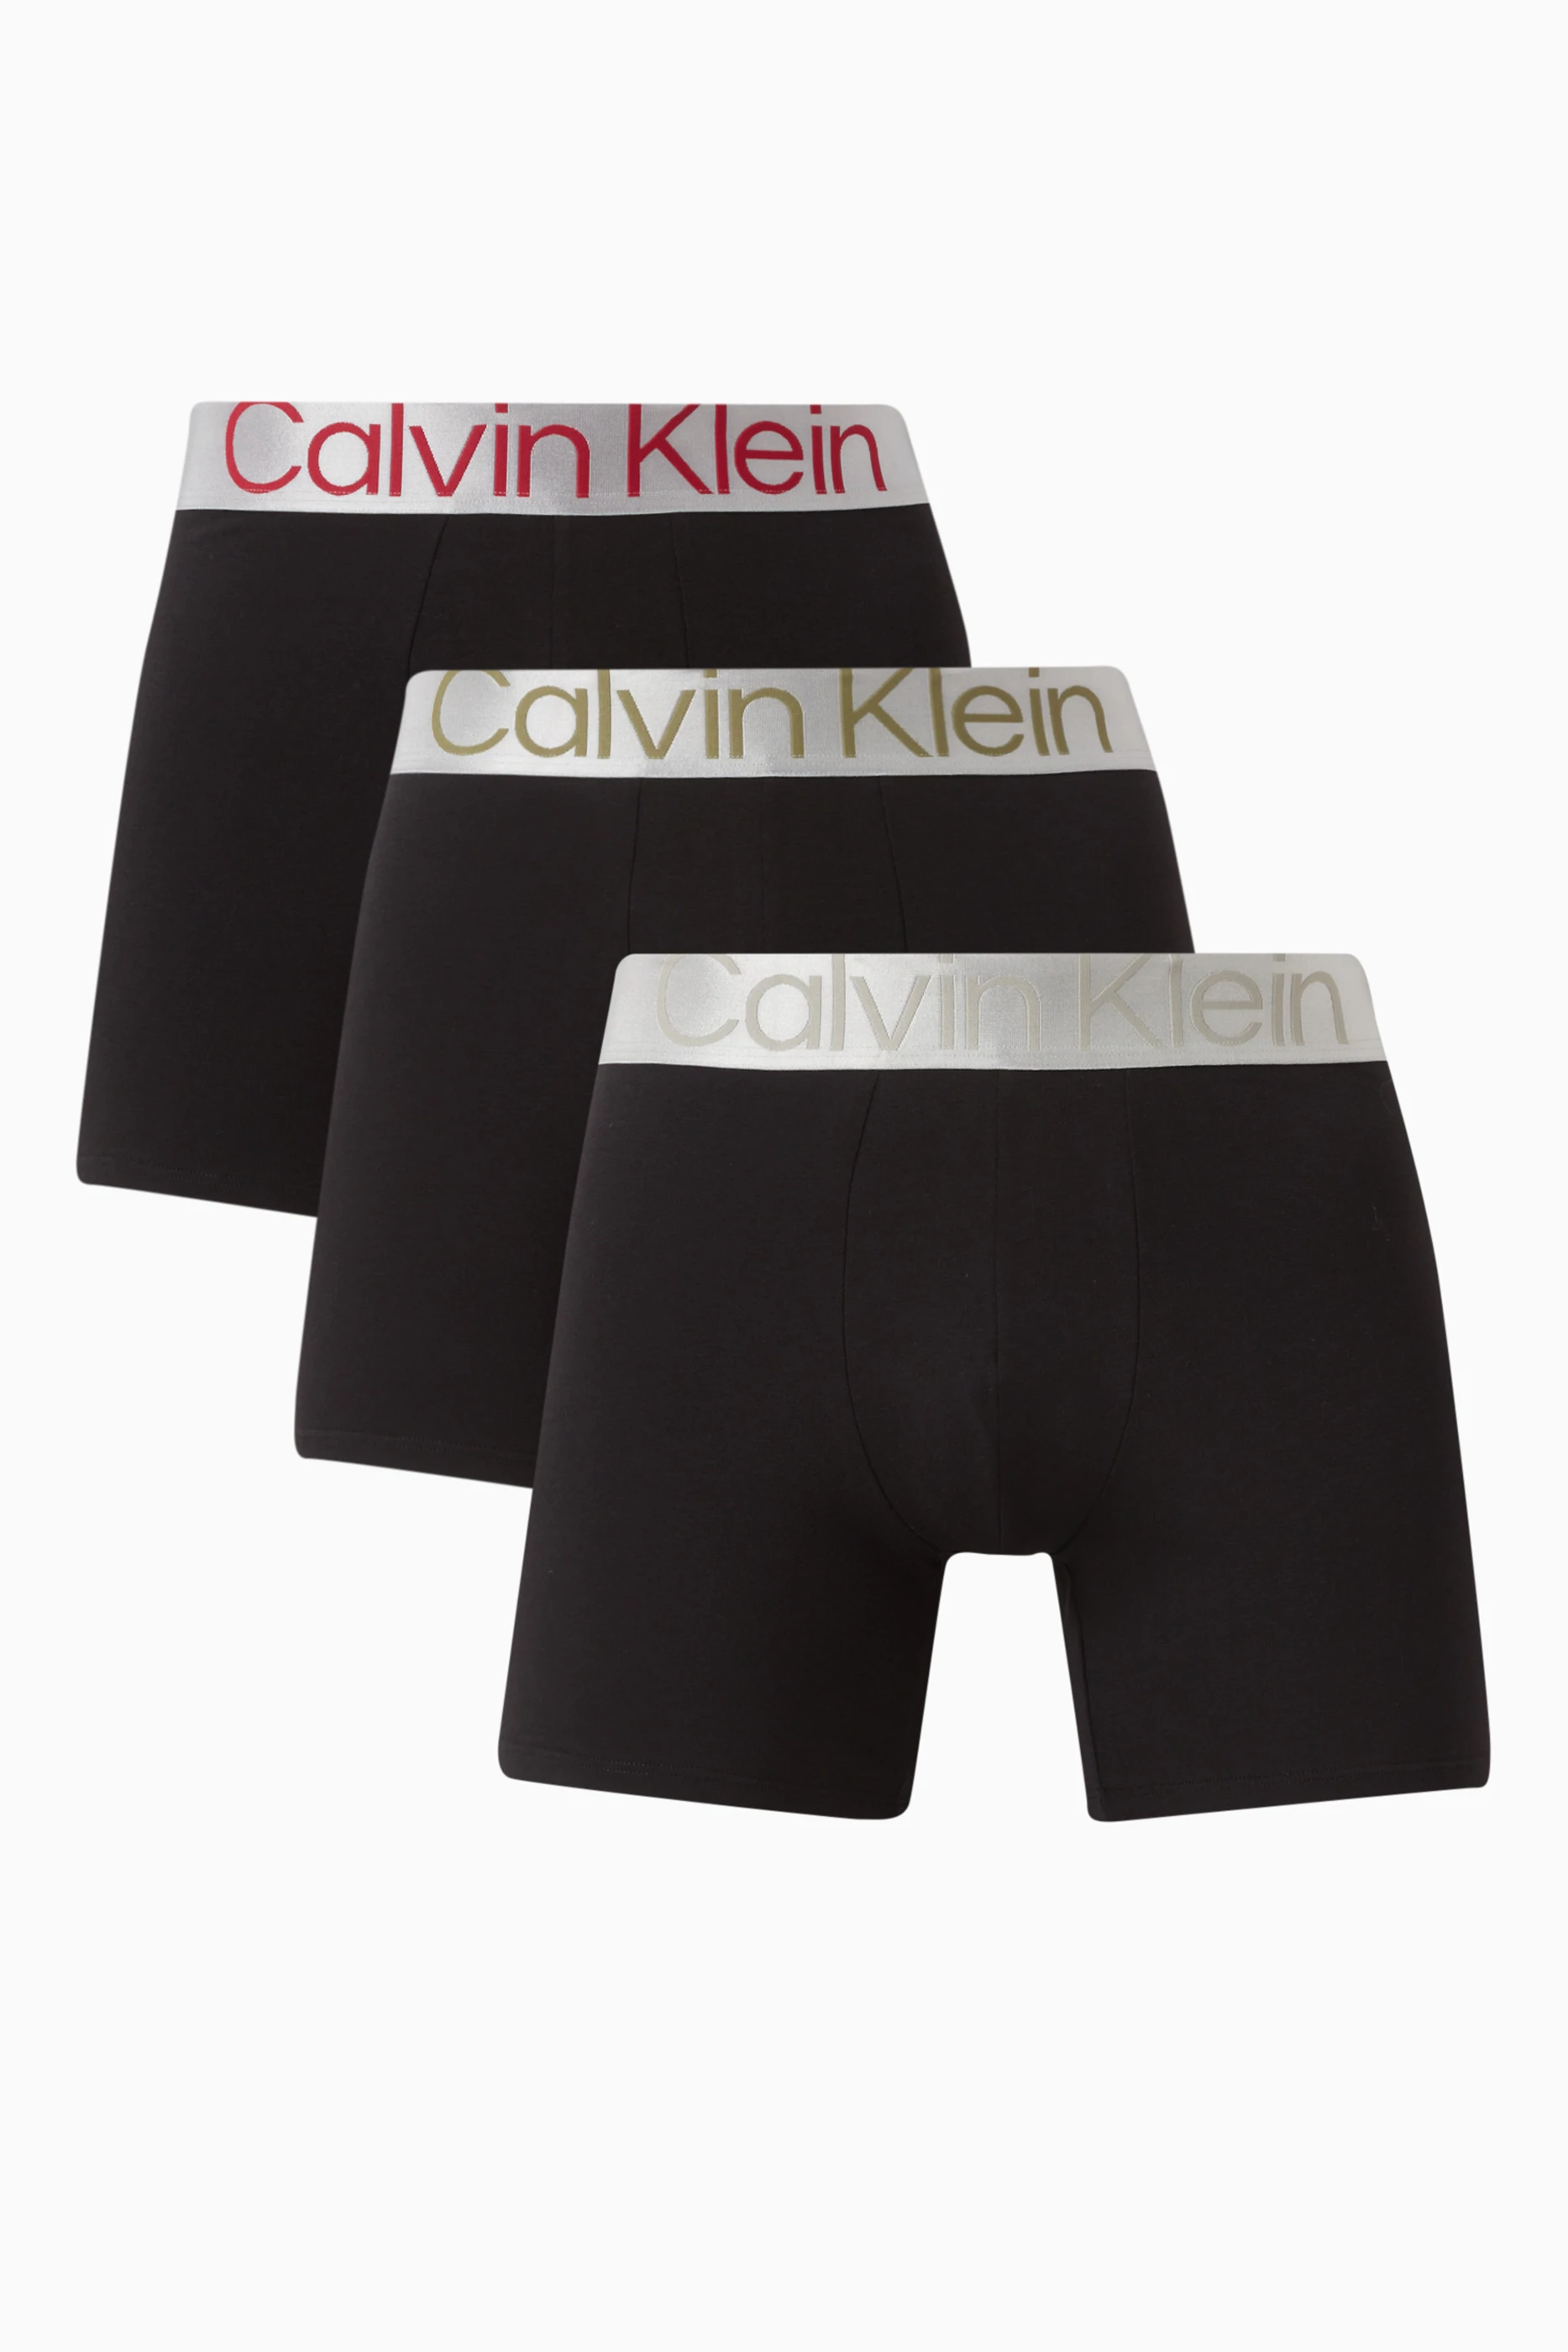 Buy Calvin Klein Black Steel Boxer Briefs, Set of Three in Cotton